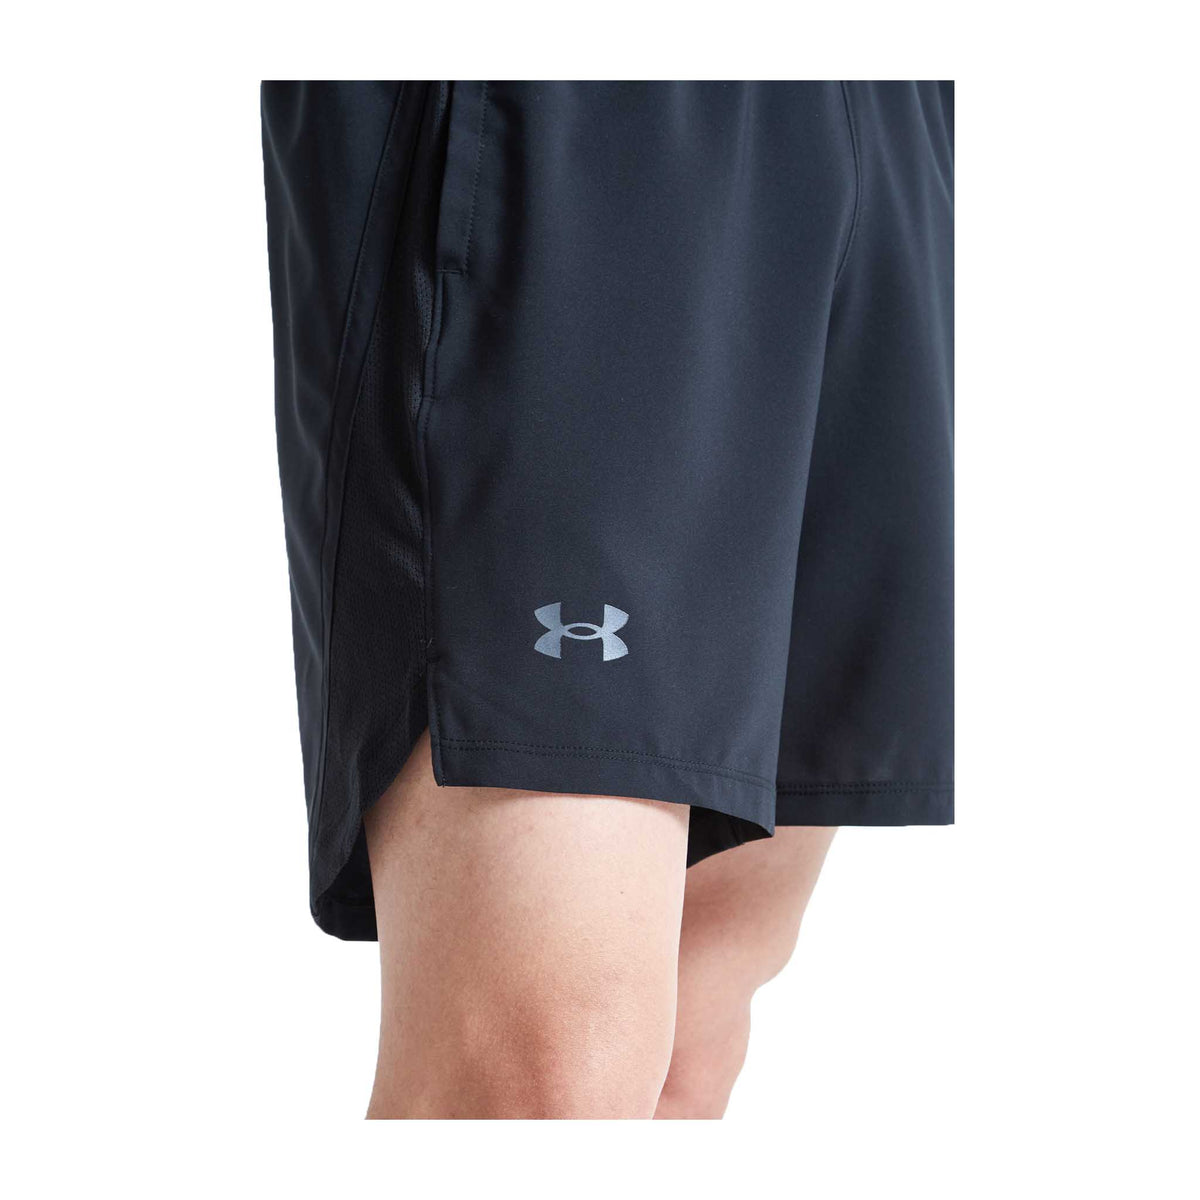 Under Armour Launch 7 pouces shorts homme logo- Black / Reflective